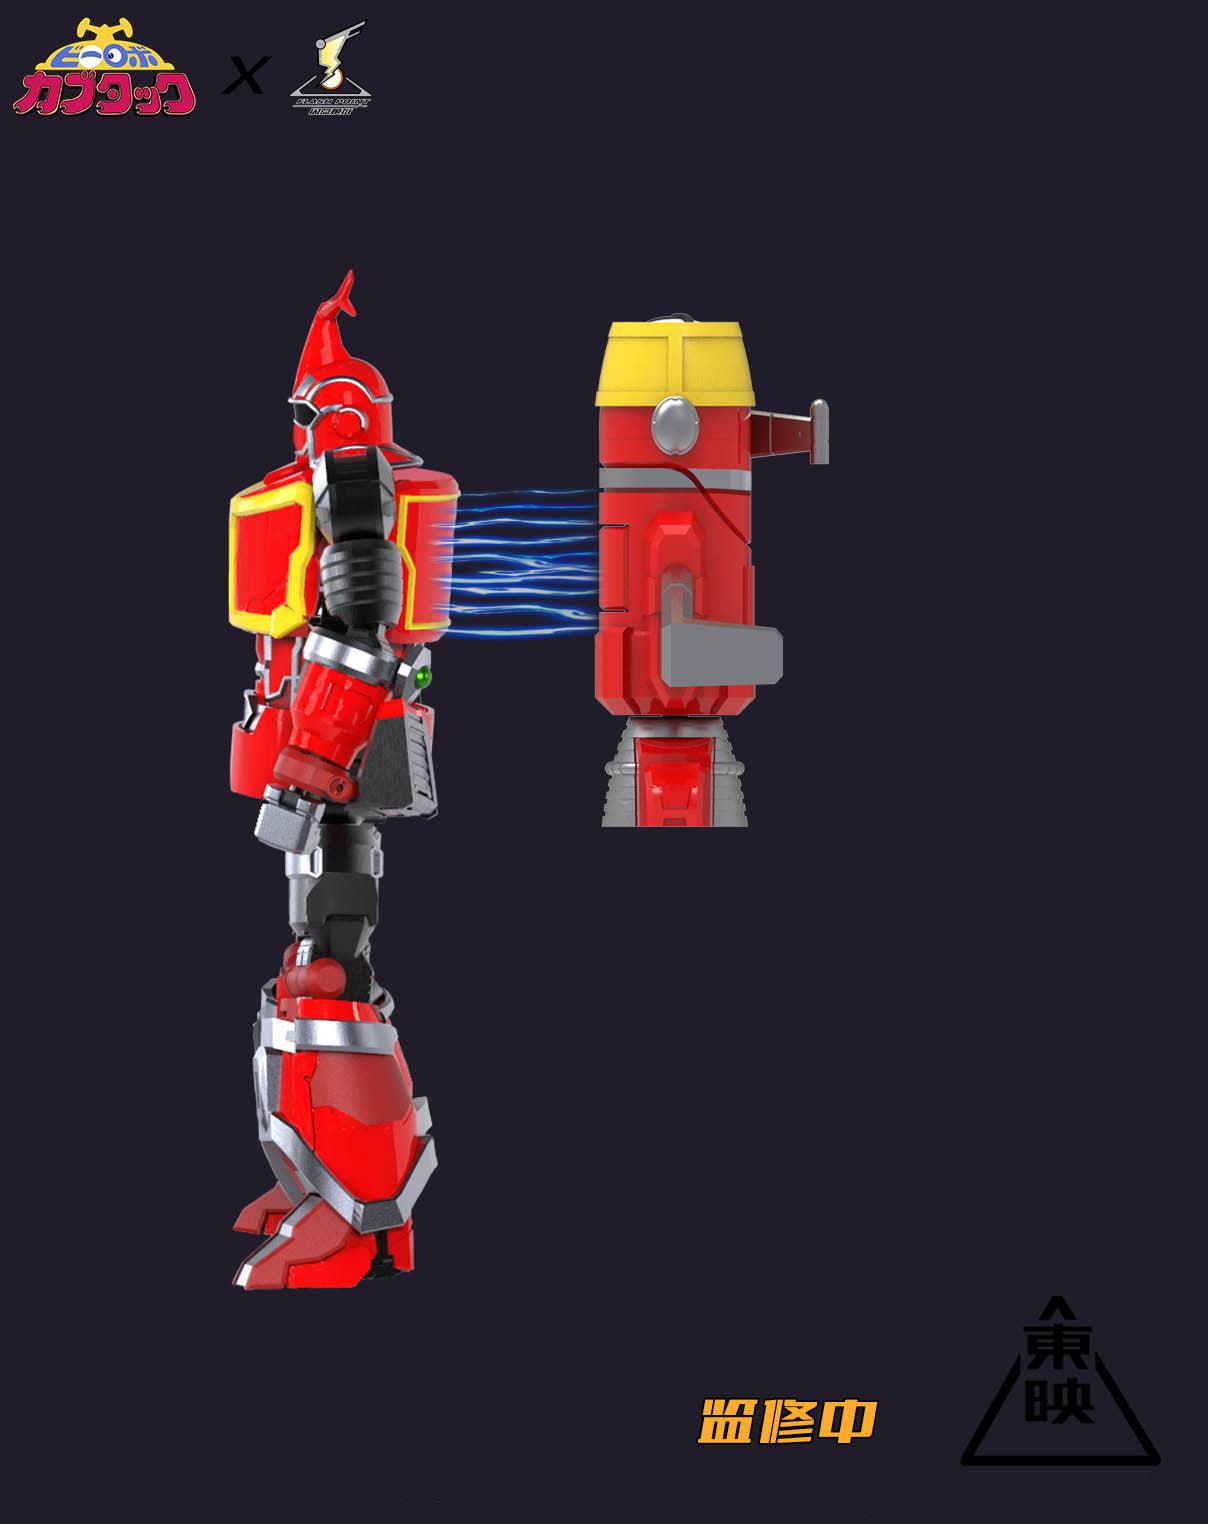 Flash Point - Kabutack Beetle Robot 03 Transforming Gokin Toy